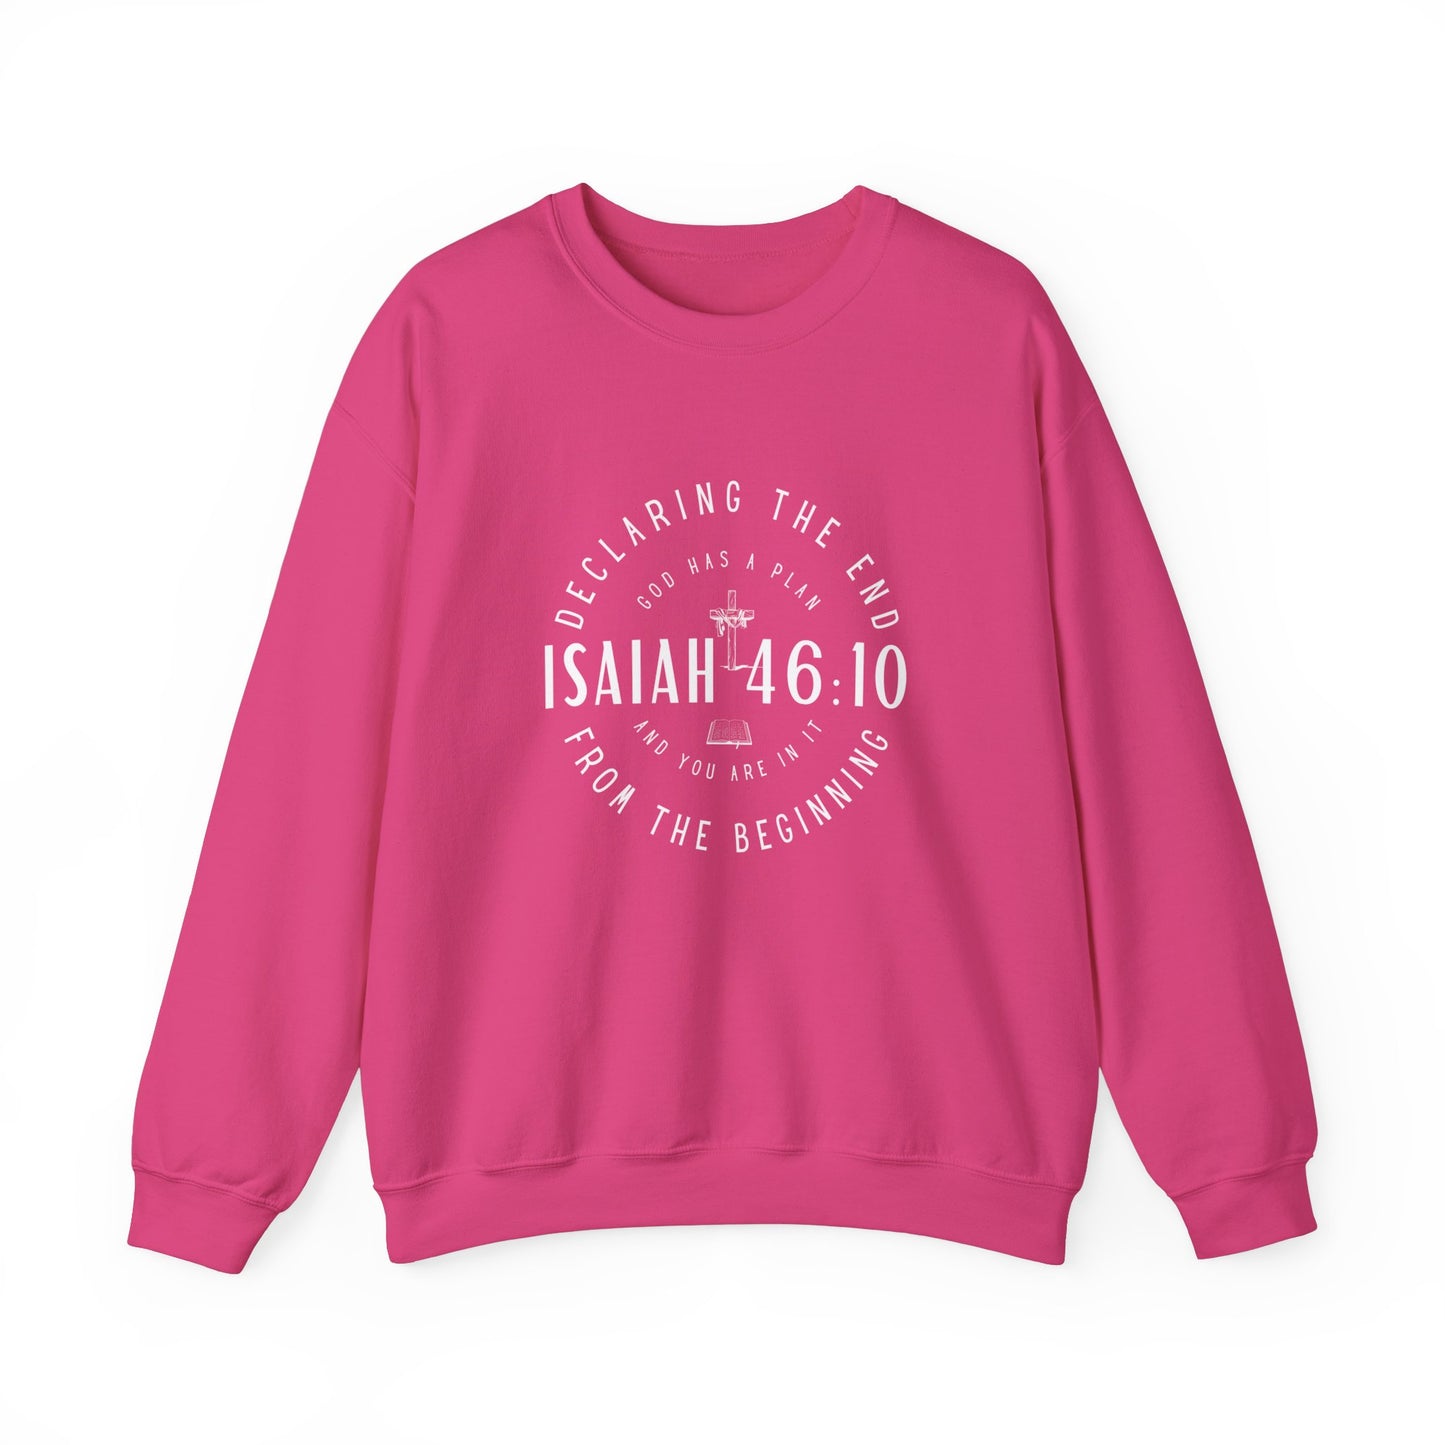 Sweatshirt, Isaiah 46.10, Gildan 18000, men and women, heliconia pink